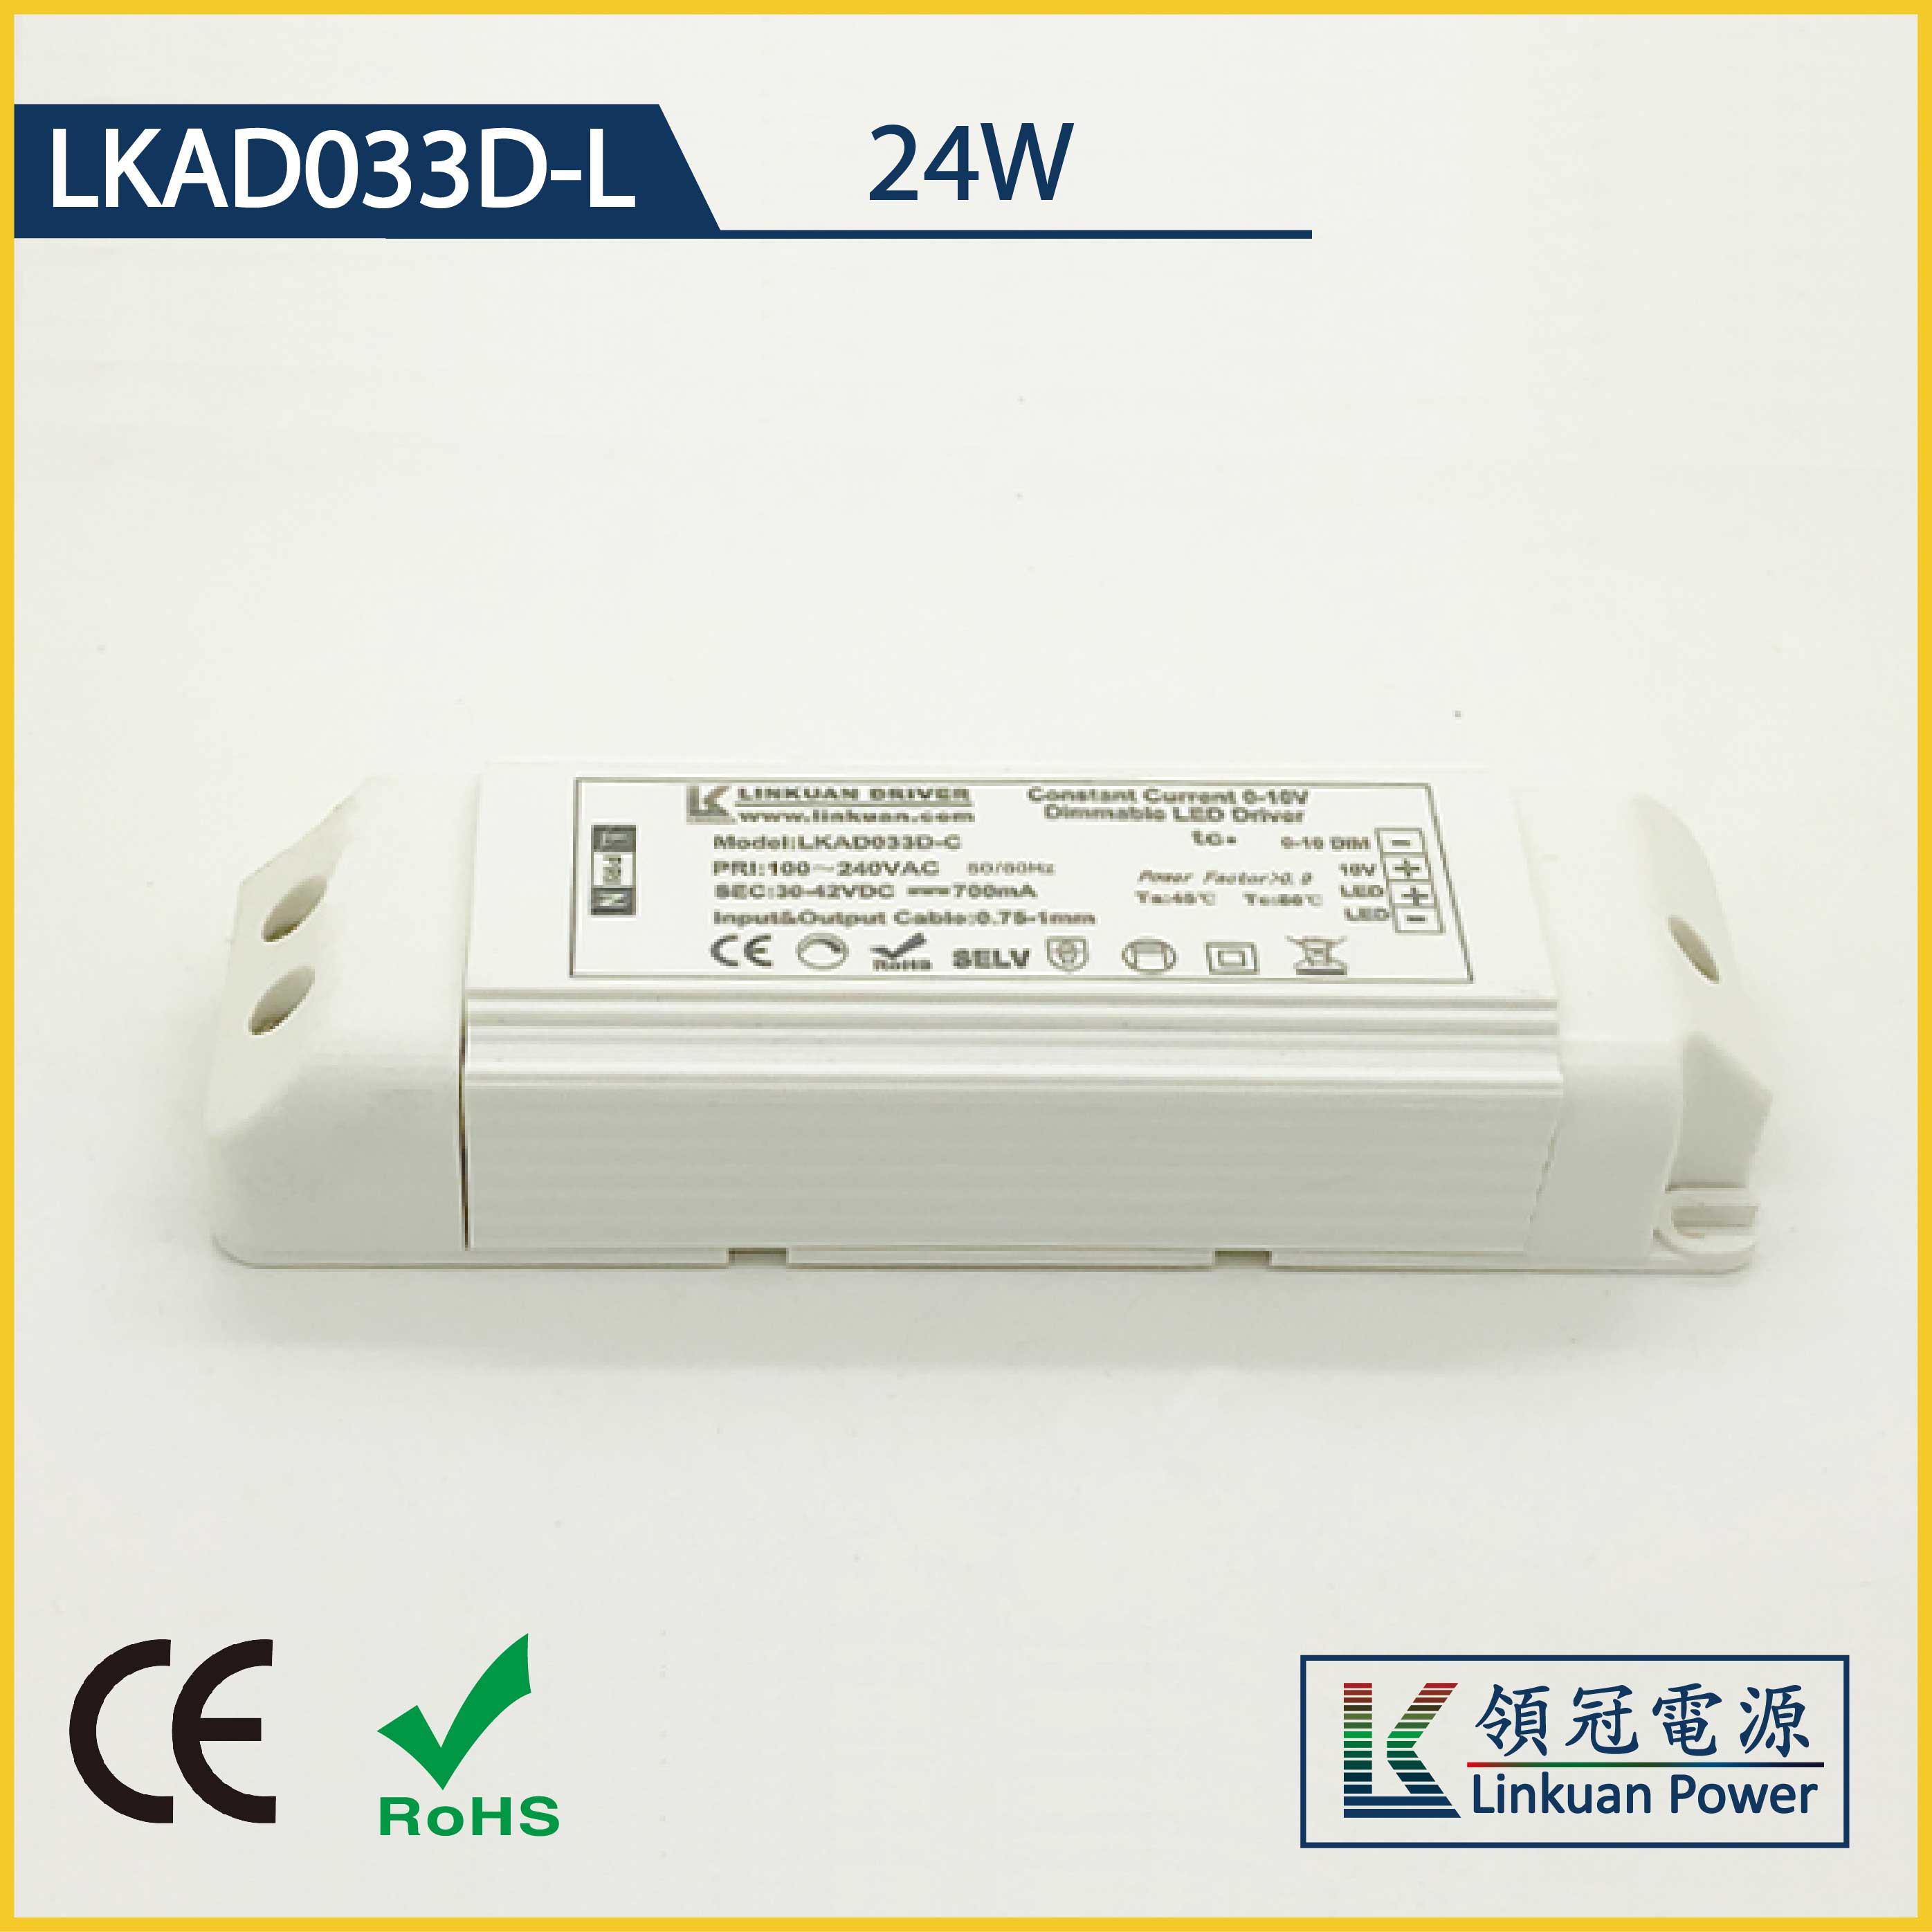 LKAD033D-L 24W 30-42V 600mA 0-10V CCT Adjusting LED drivers